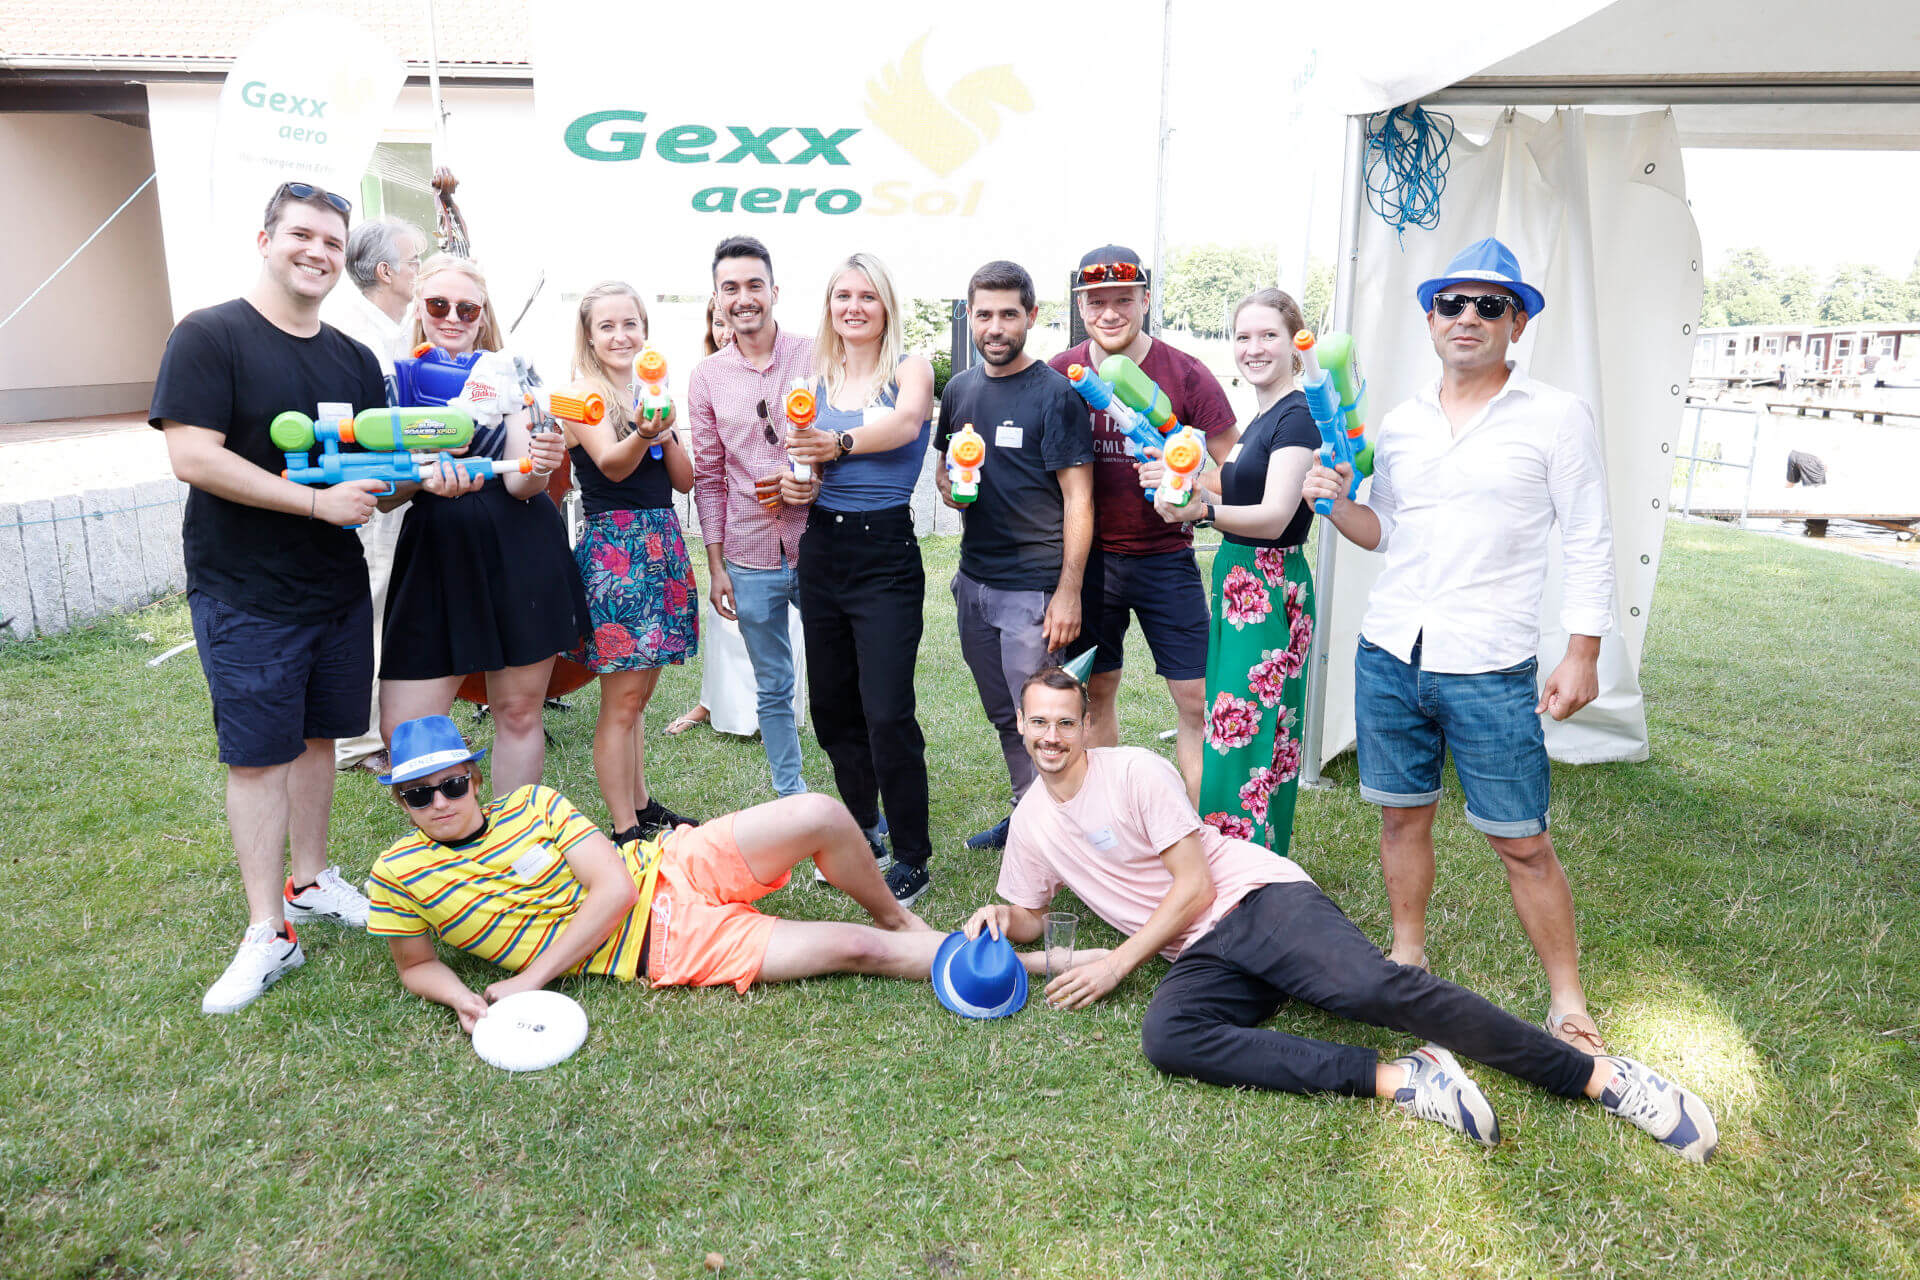 Sommerfest Gexx aeroSol